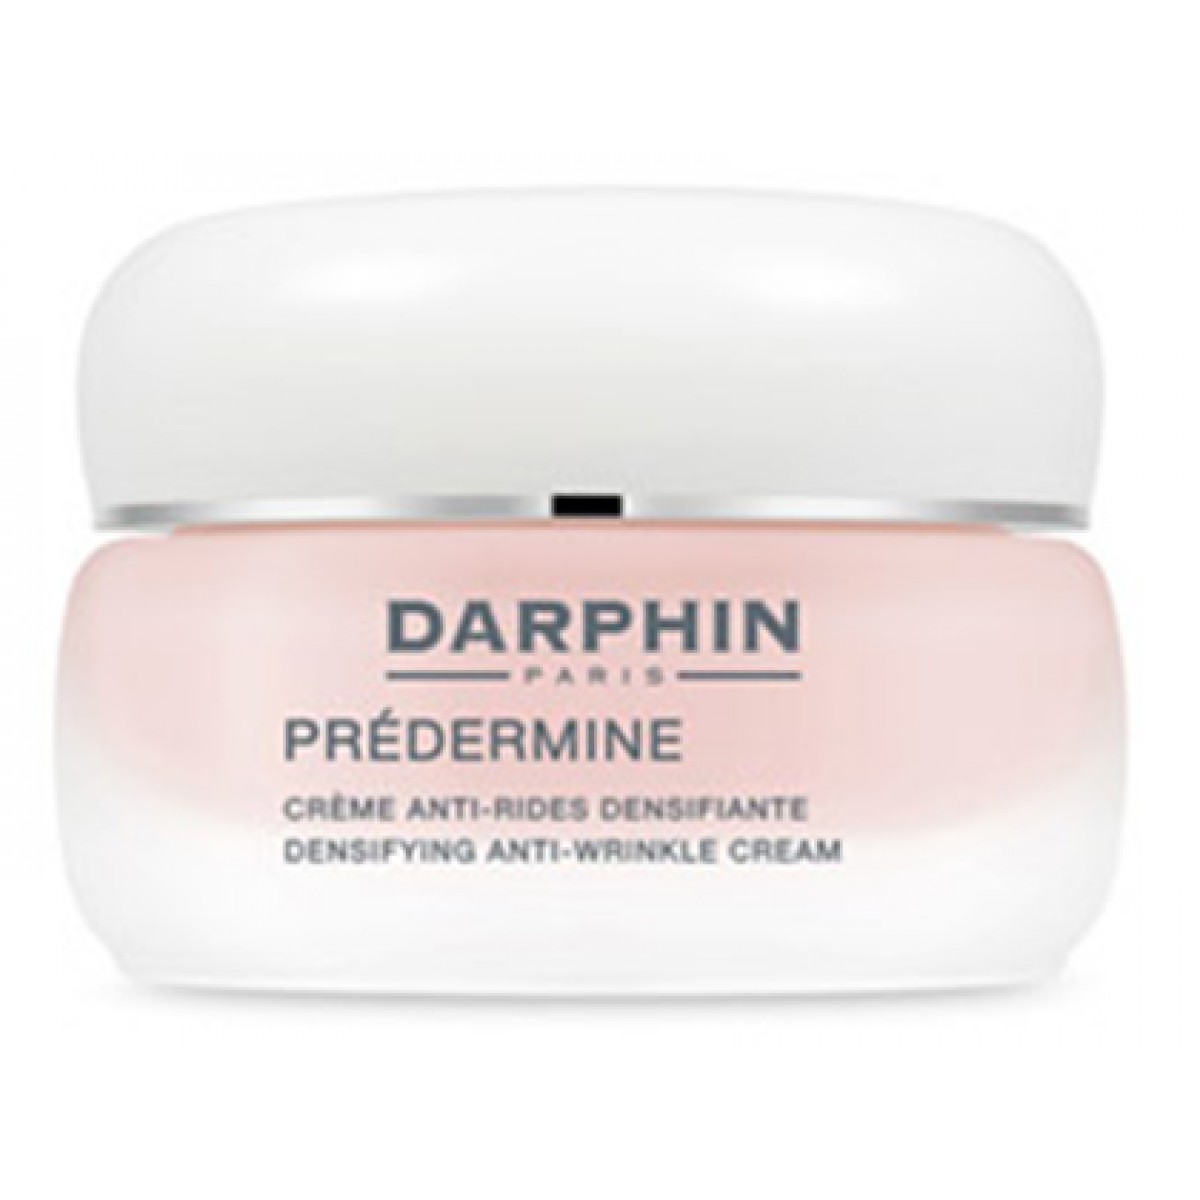 darphin predermine densifiyng crema anti rughe densificante per pelli normali e miste